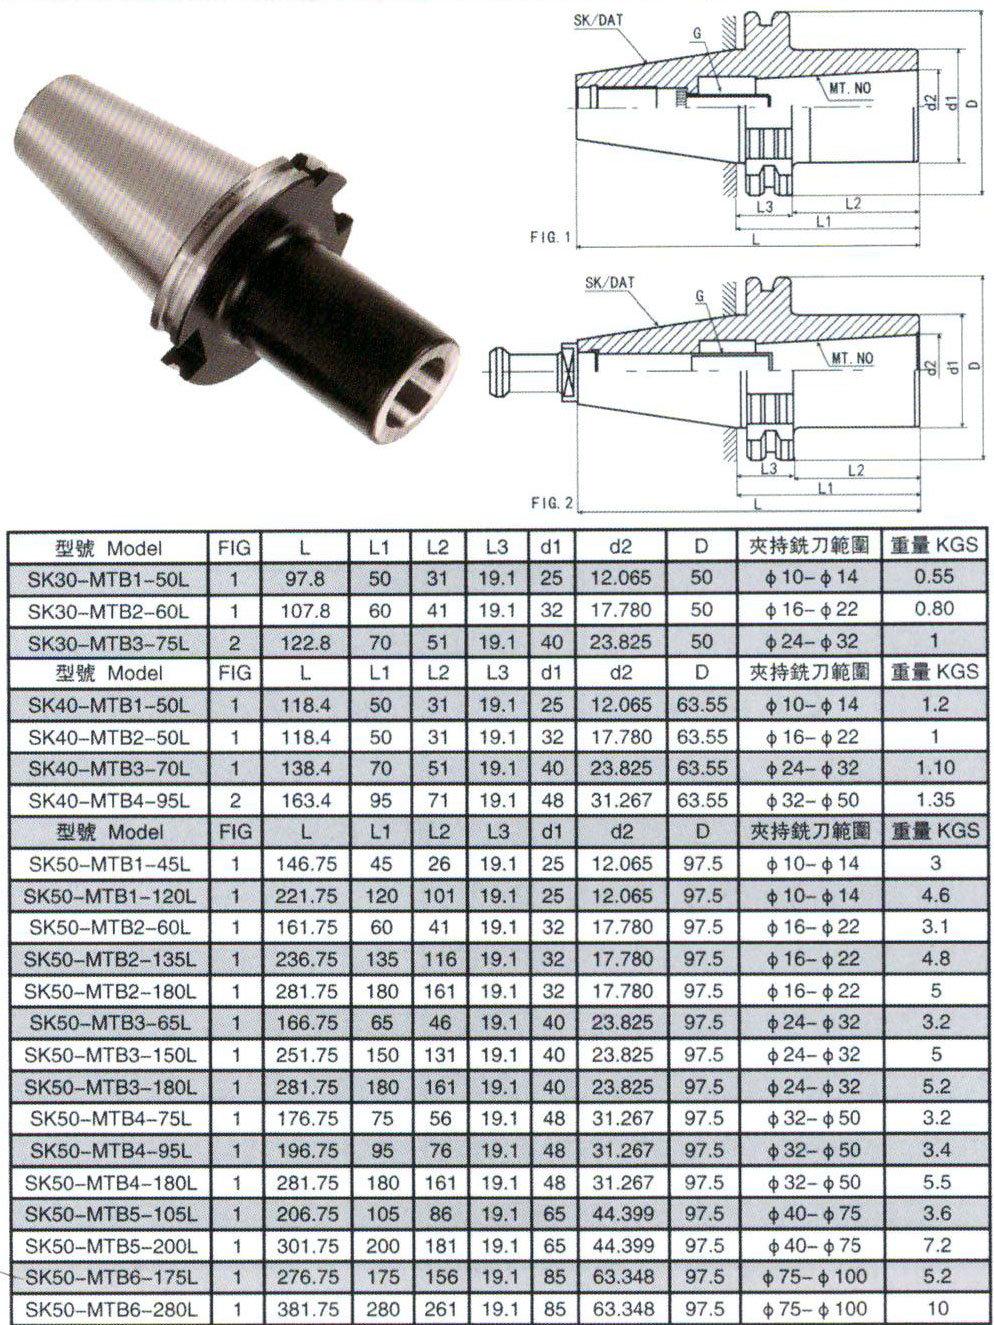 Bt/DIN2080/Jt/Sk/Dat/Cat Tool Holder, Sk30-MTB Morse Taper Adapter